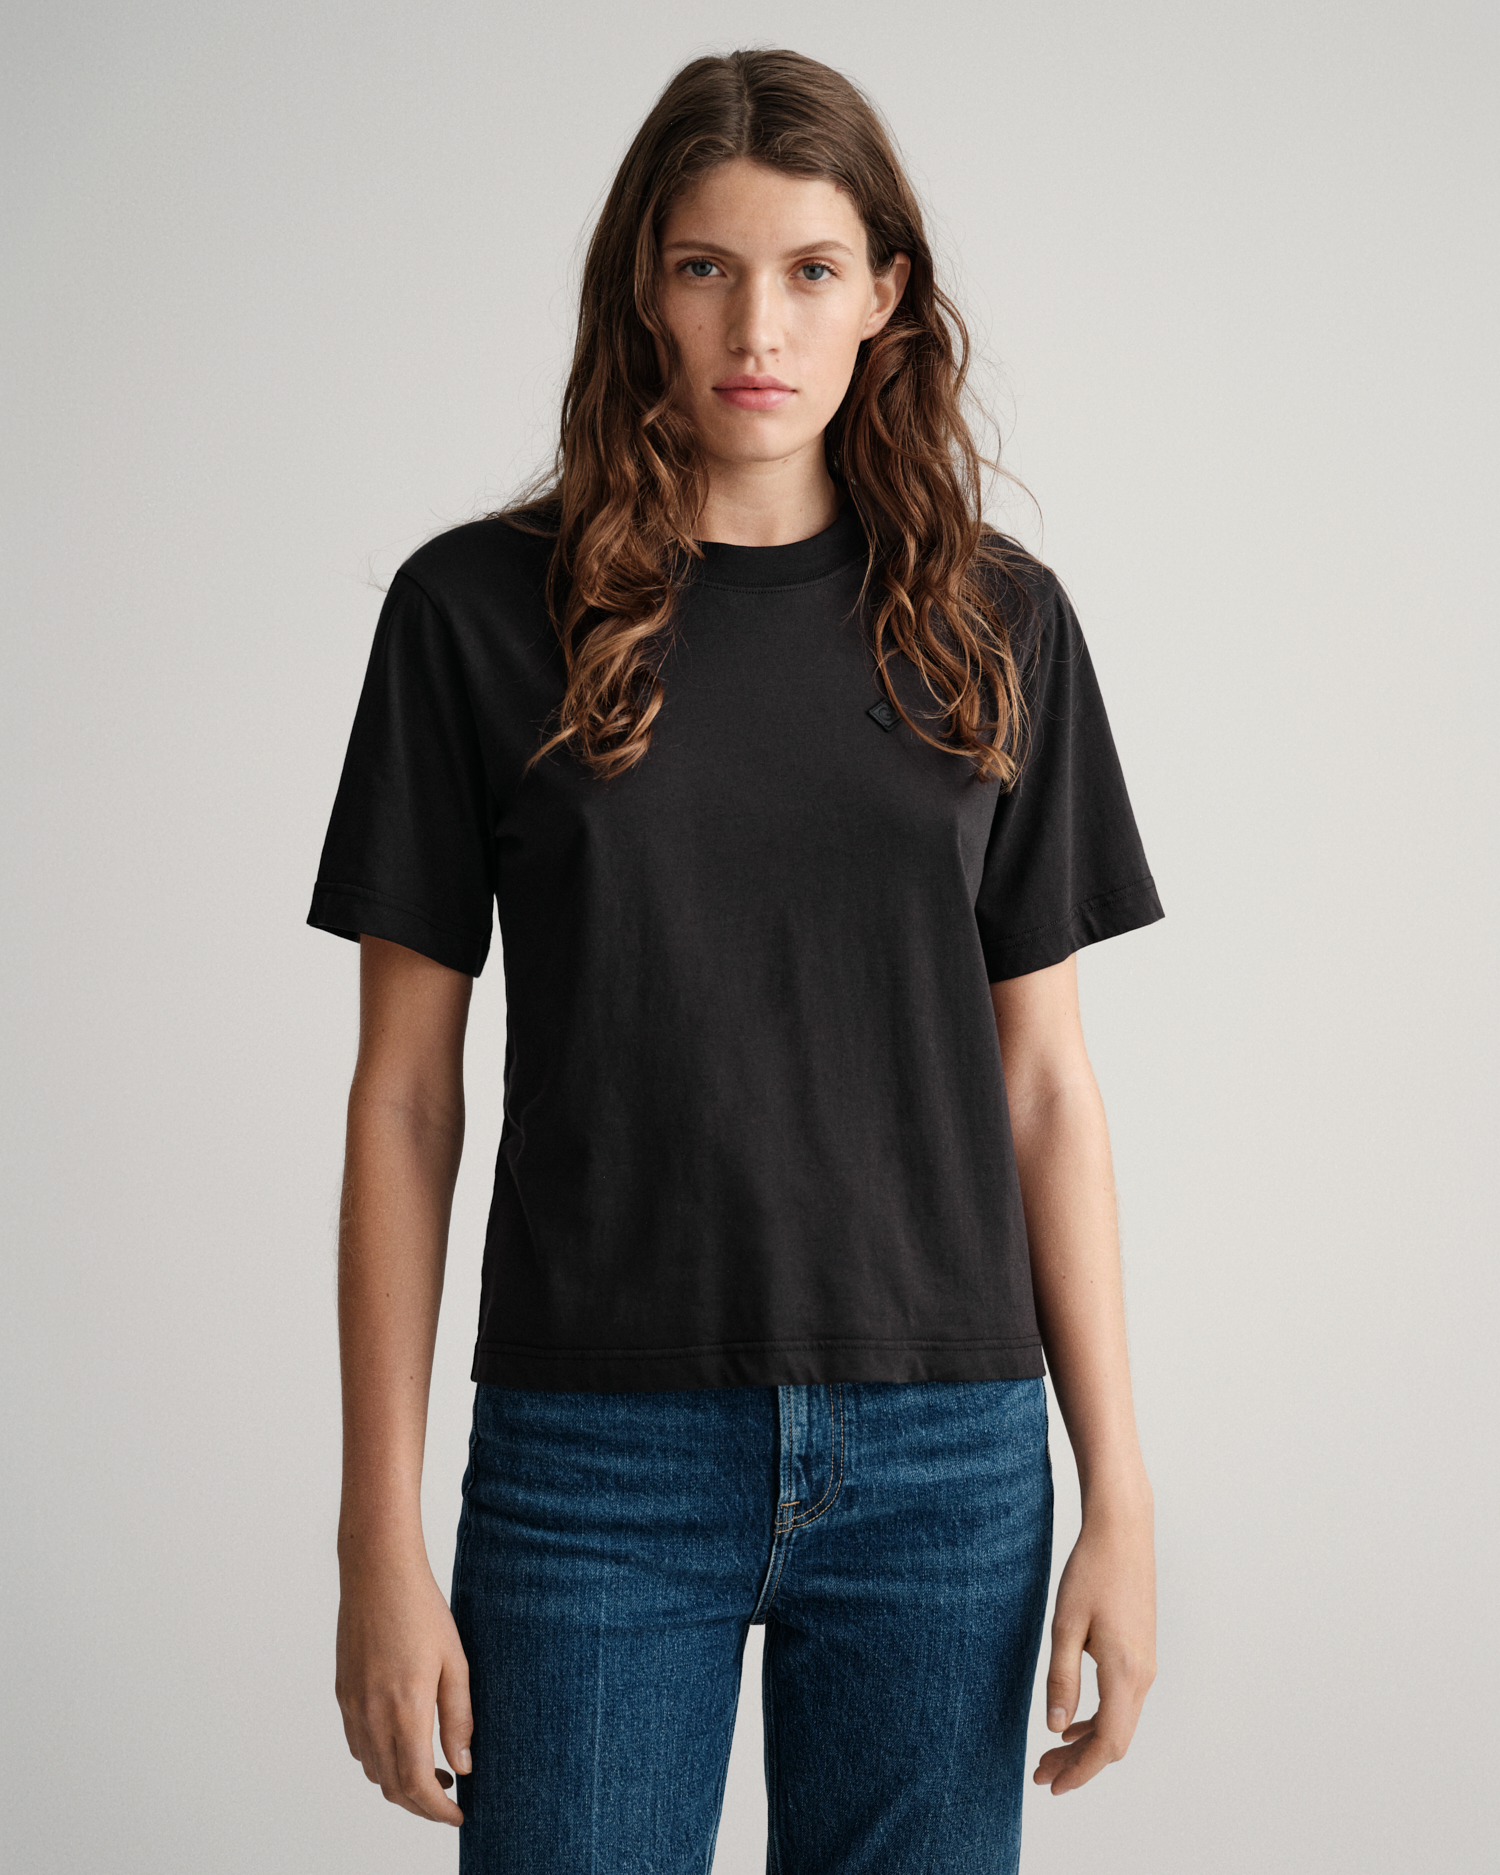 KEERADS Femmes T-Shirt ÉLéGant Grande Taille Imprimé Floral Col en V Mode Manche Longue Bouton Tee Top Haut Blouse 